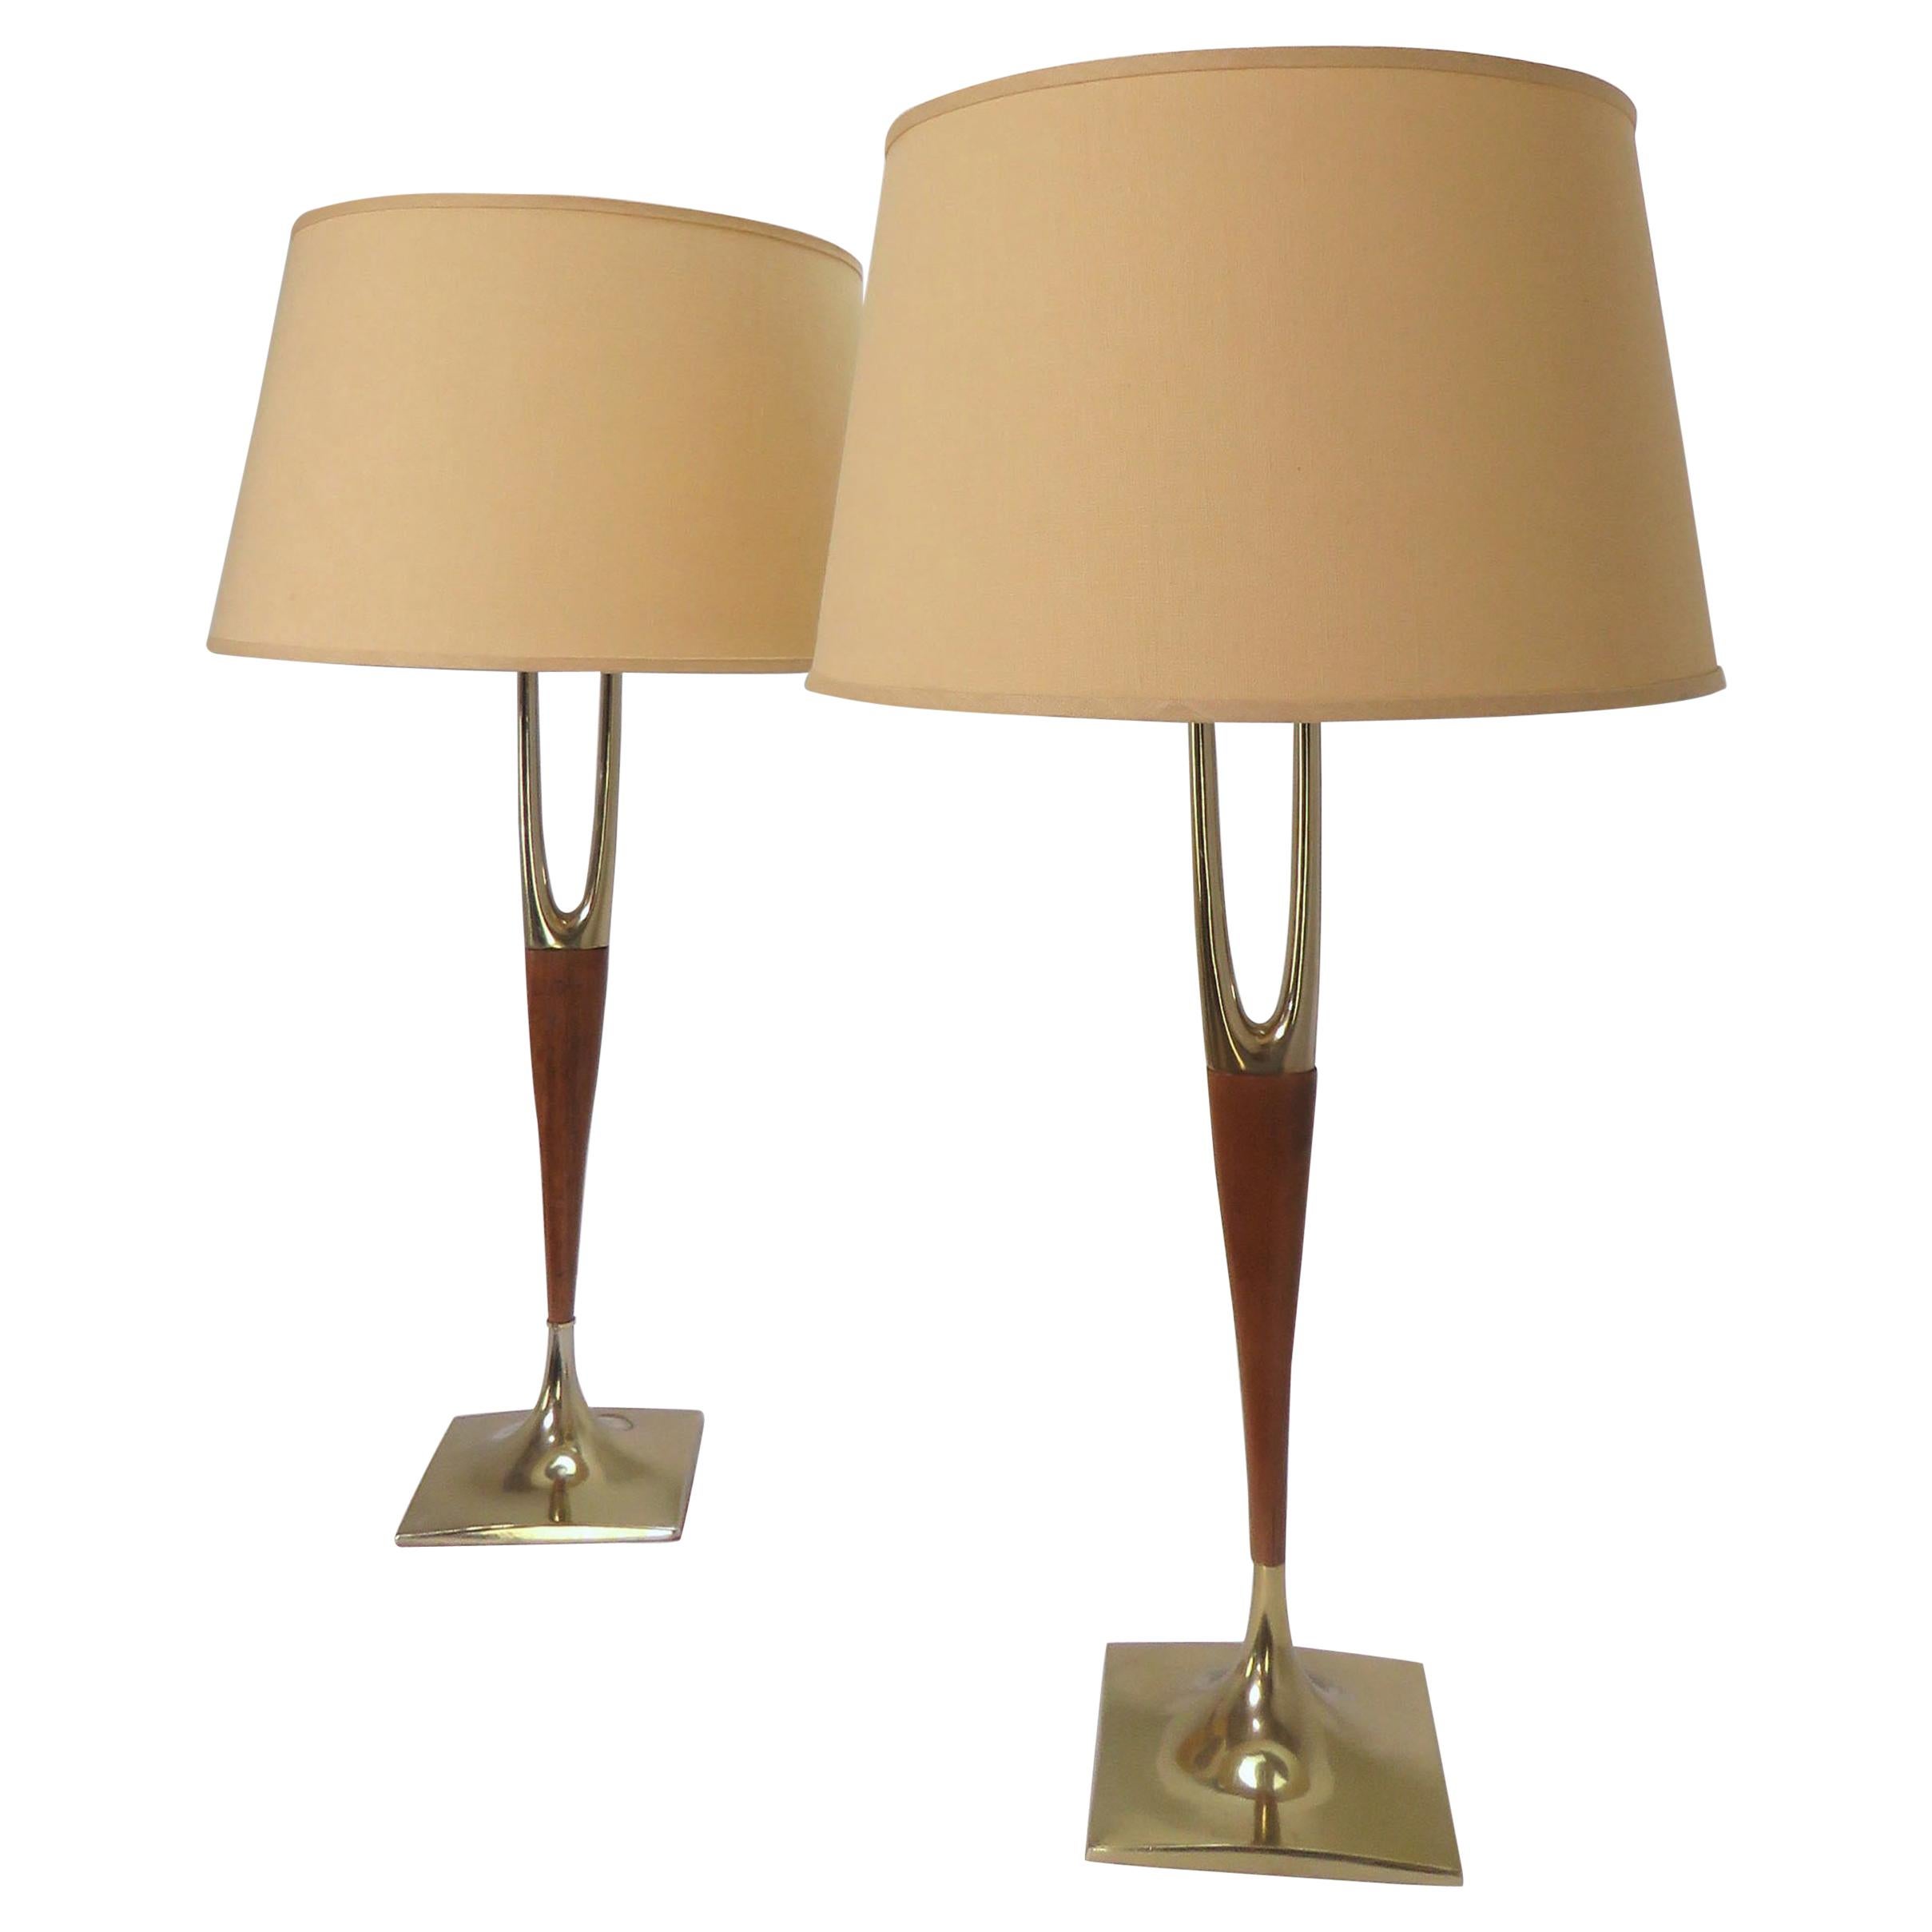 Pair of Laurel Wishbone Table Lamps, circa 1960s